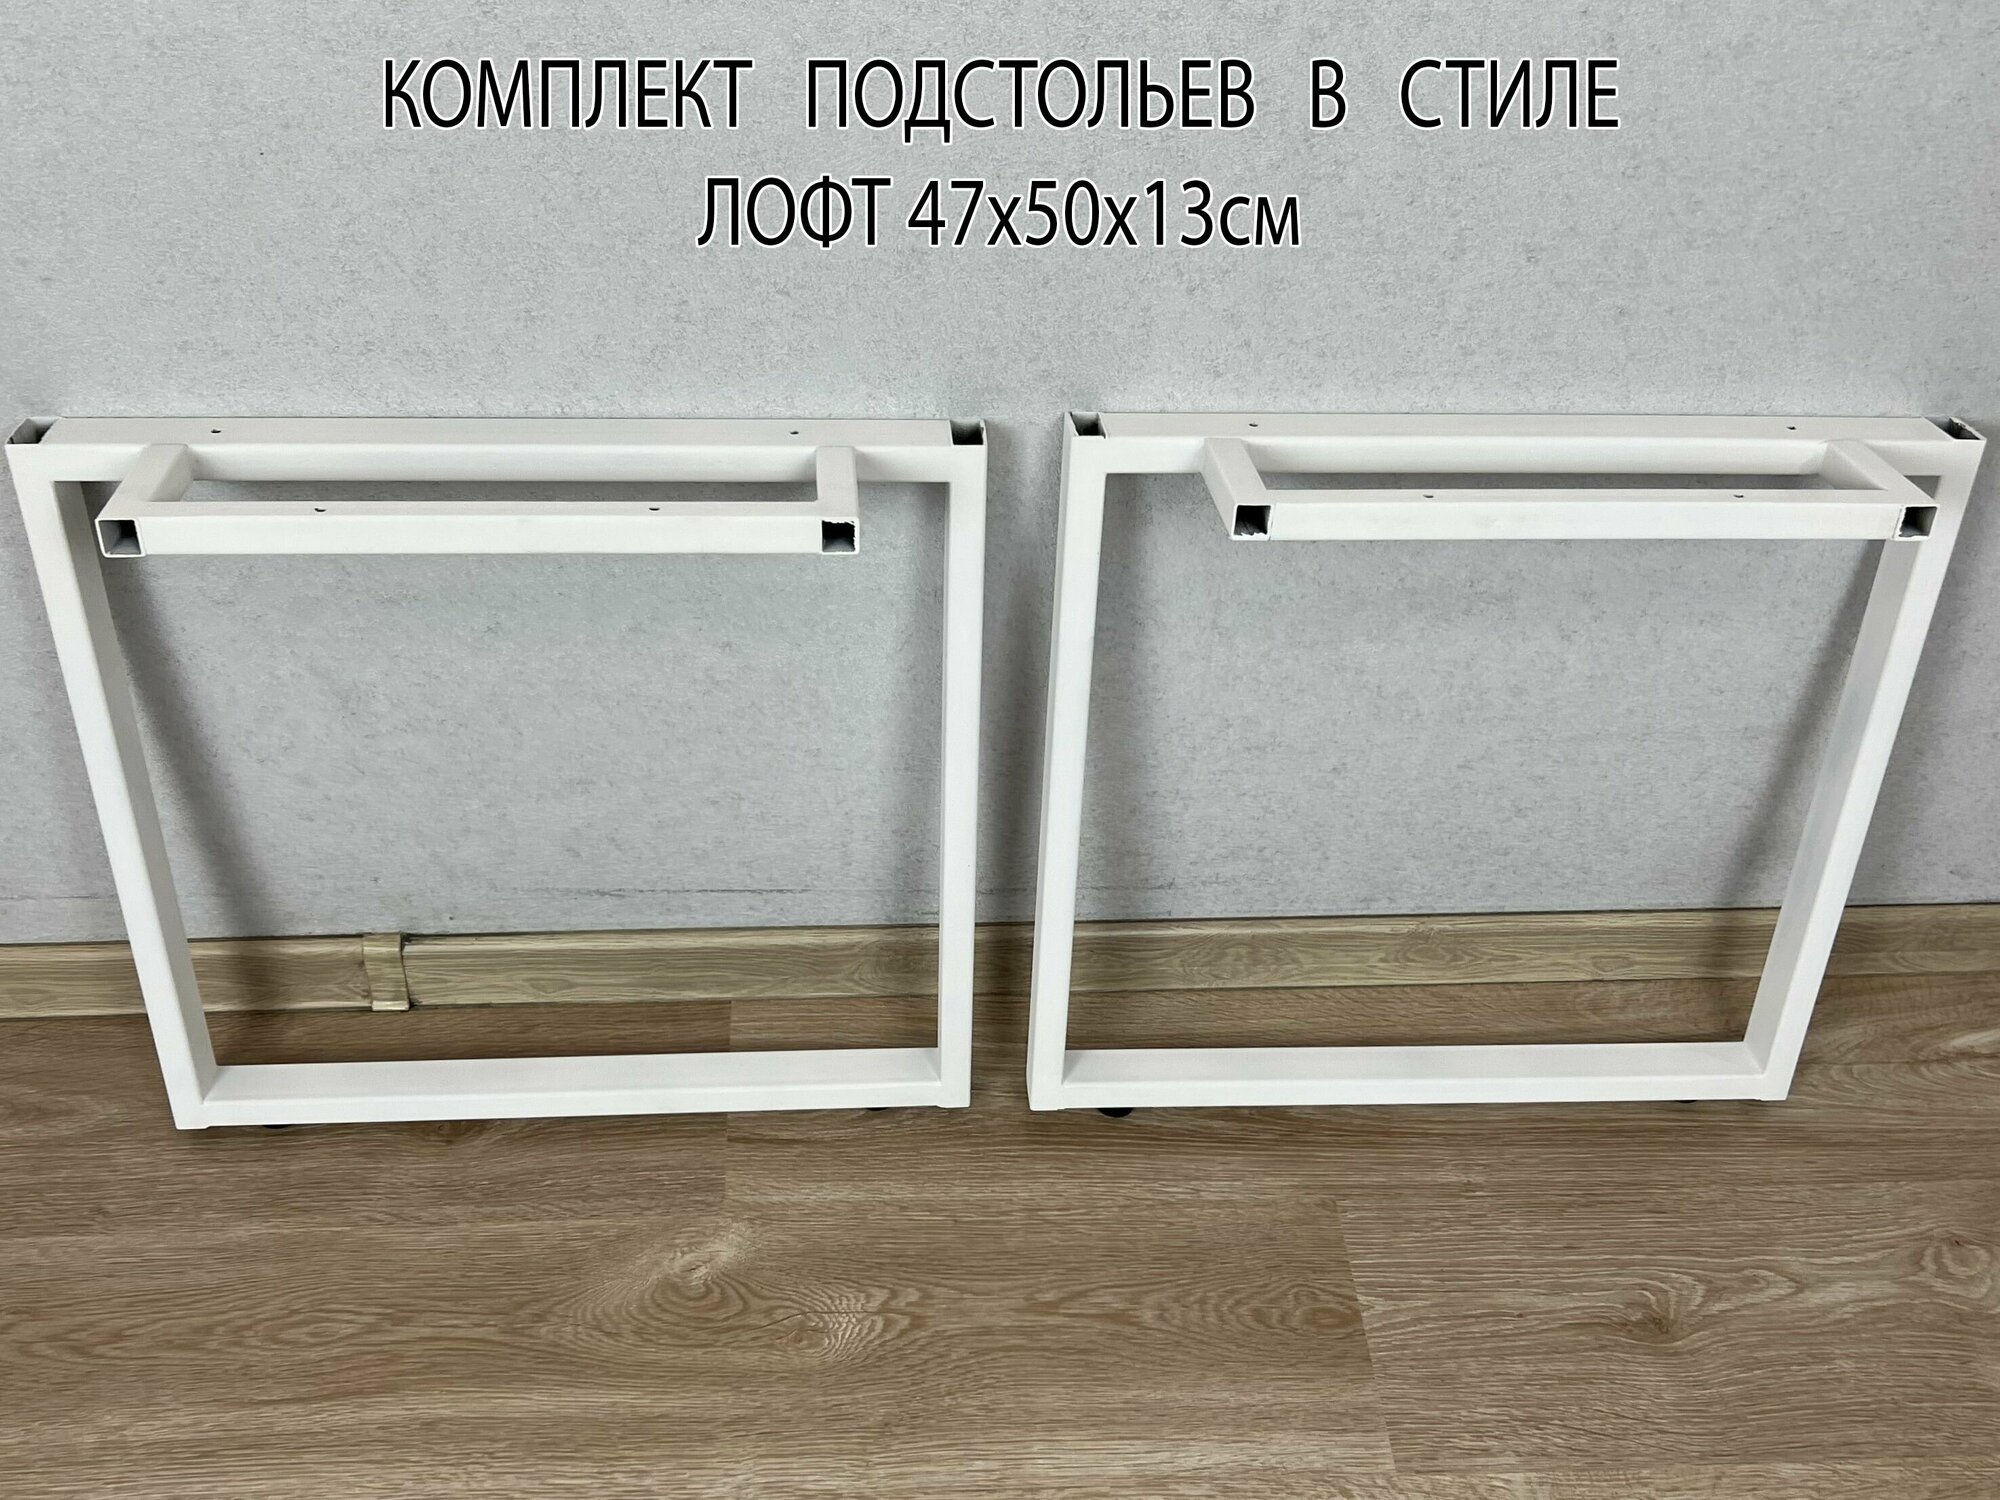 Подстолье цвет белый мебельная опора комплект из 2 ножек для журнального стола высота ножки 47 см